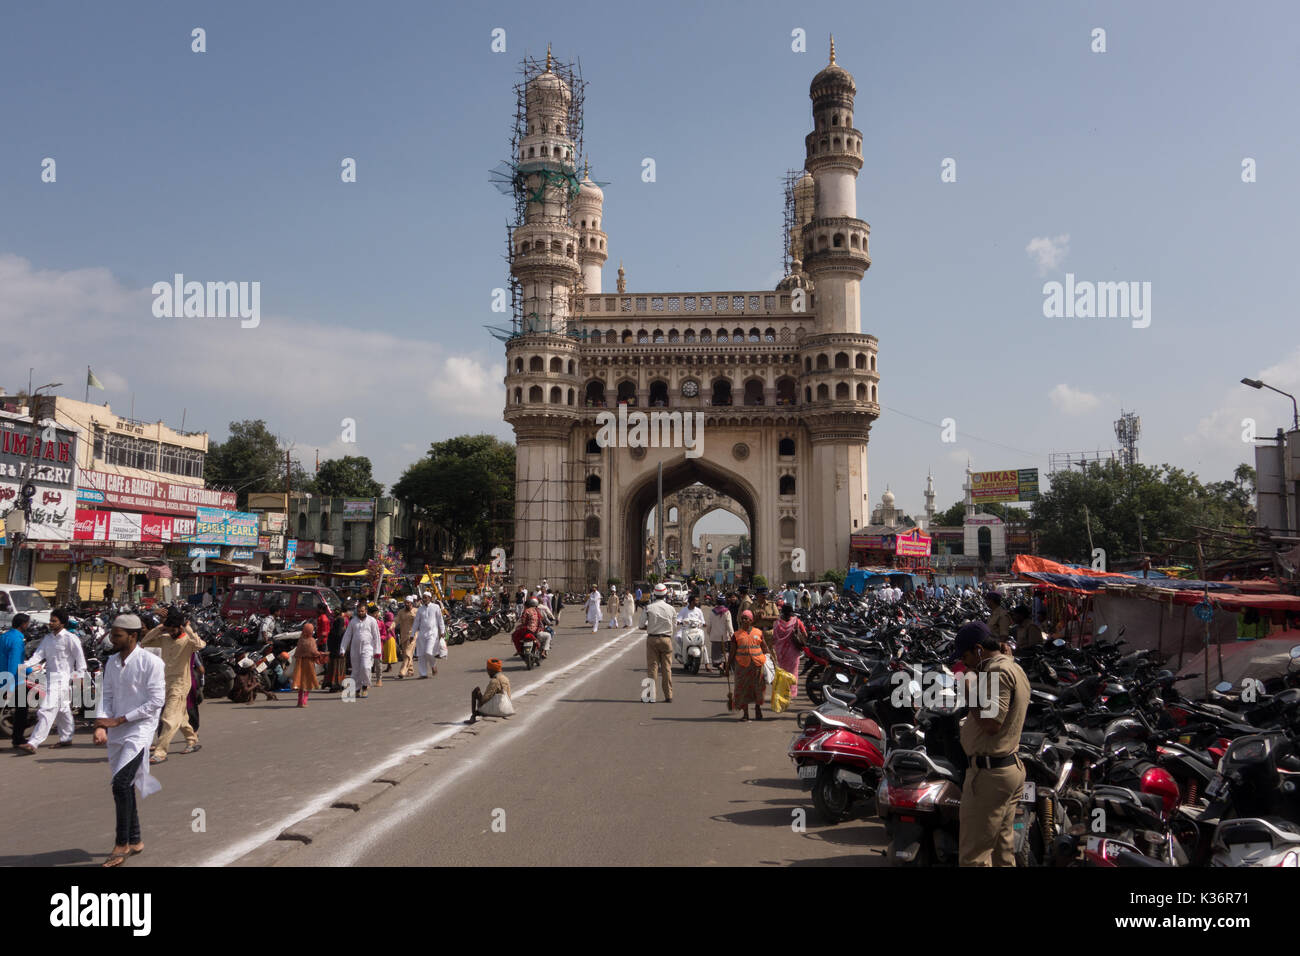 Hyderabad, Indien-02 September 2017. morgen Szenen an die ikonische charminar während des Eid al-Adha, hat keine bestimmte Zeitdauer in Hyderabad, Indien. Sanjay borra/alamy Nachrichten Stockfoto